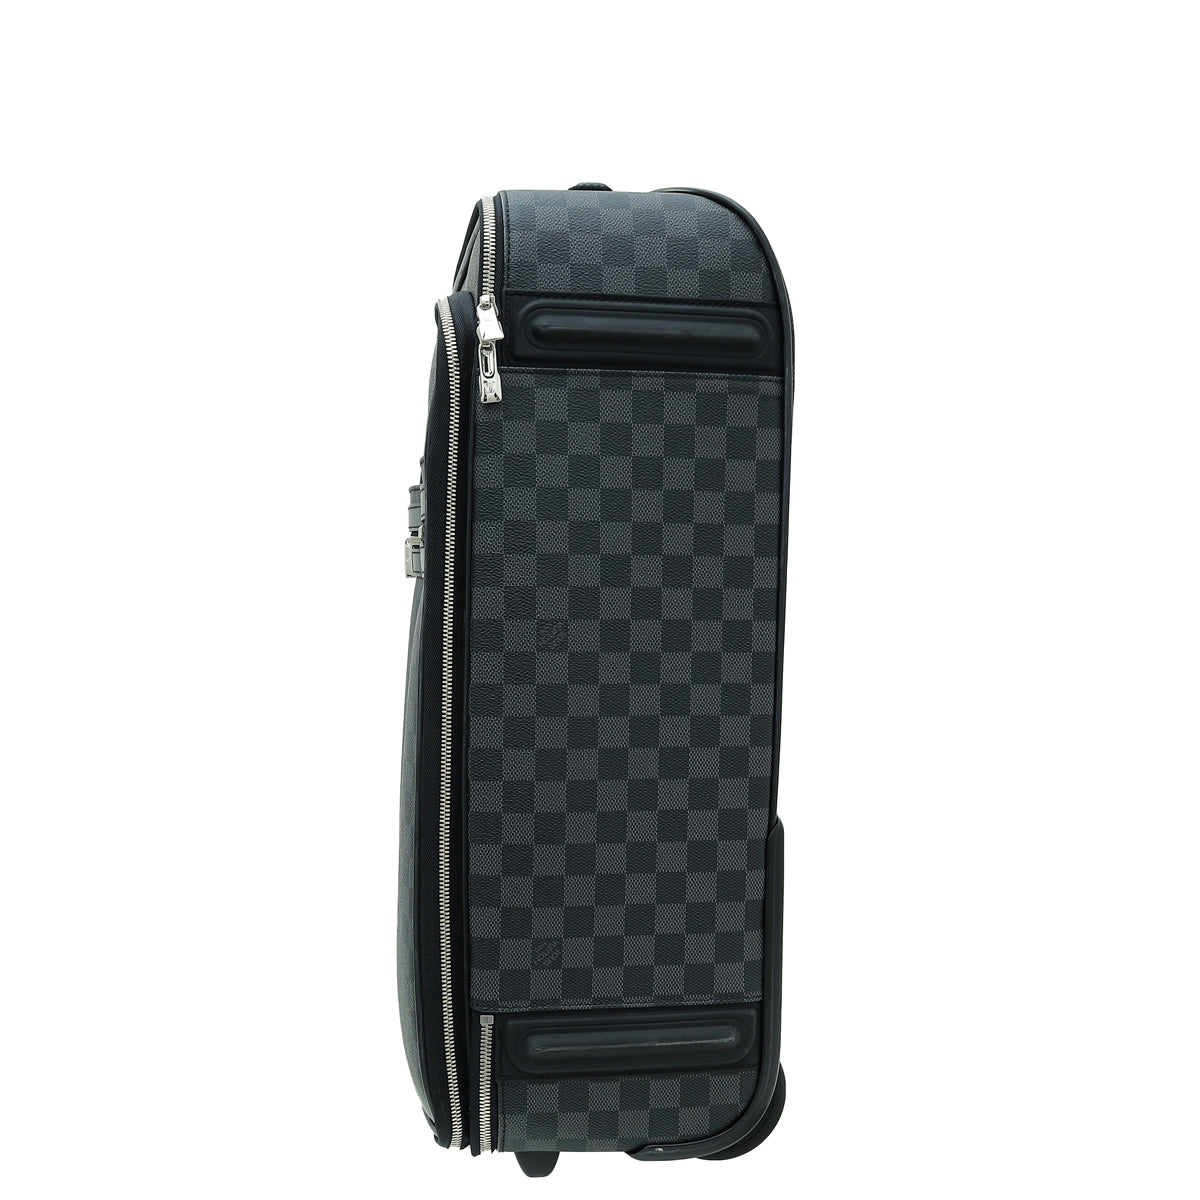 Louis Vuitton Pégase Légère 55 Business Damier Graphite Luggage